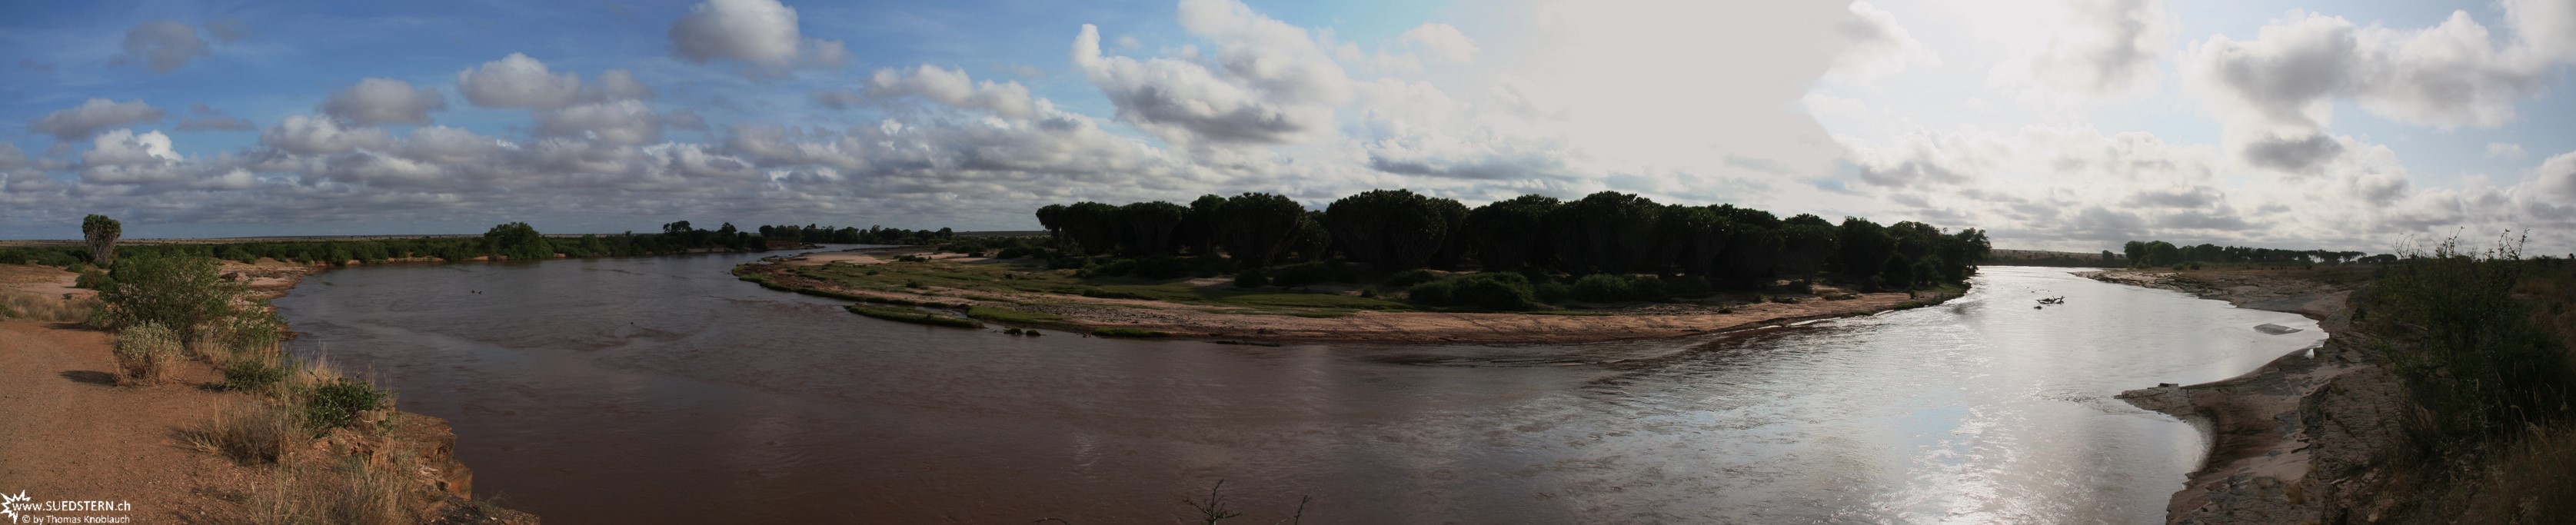 2007-04-11 - Kenya - Tsavo East - Tsavo River Panorama